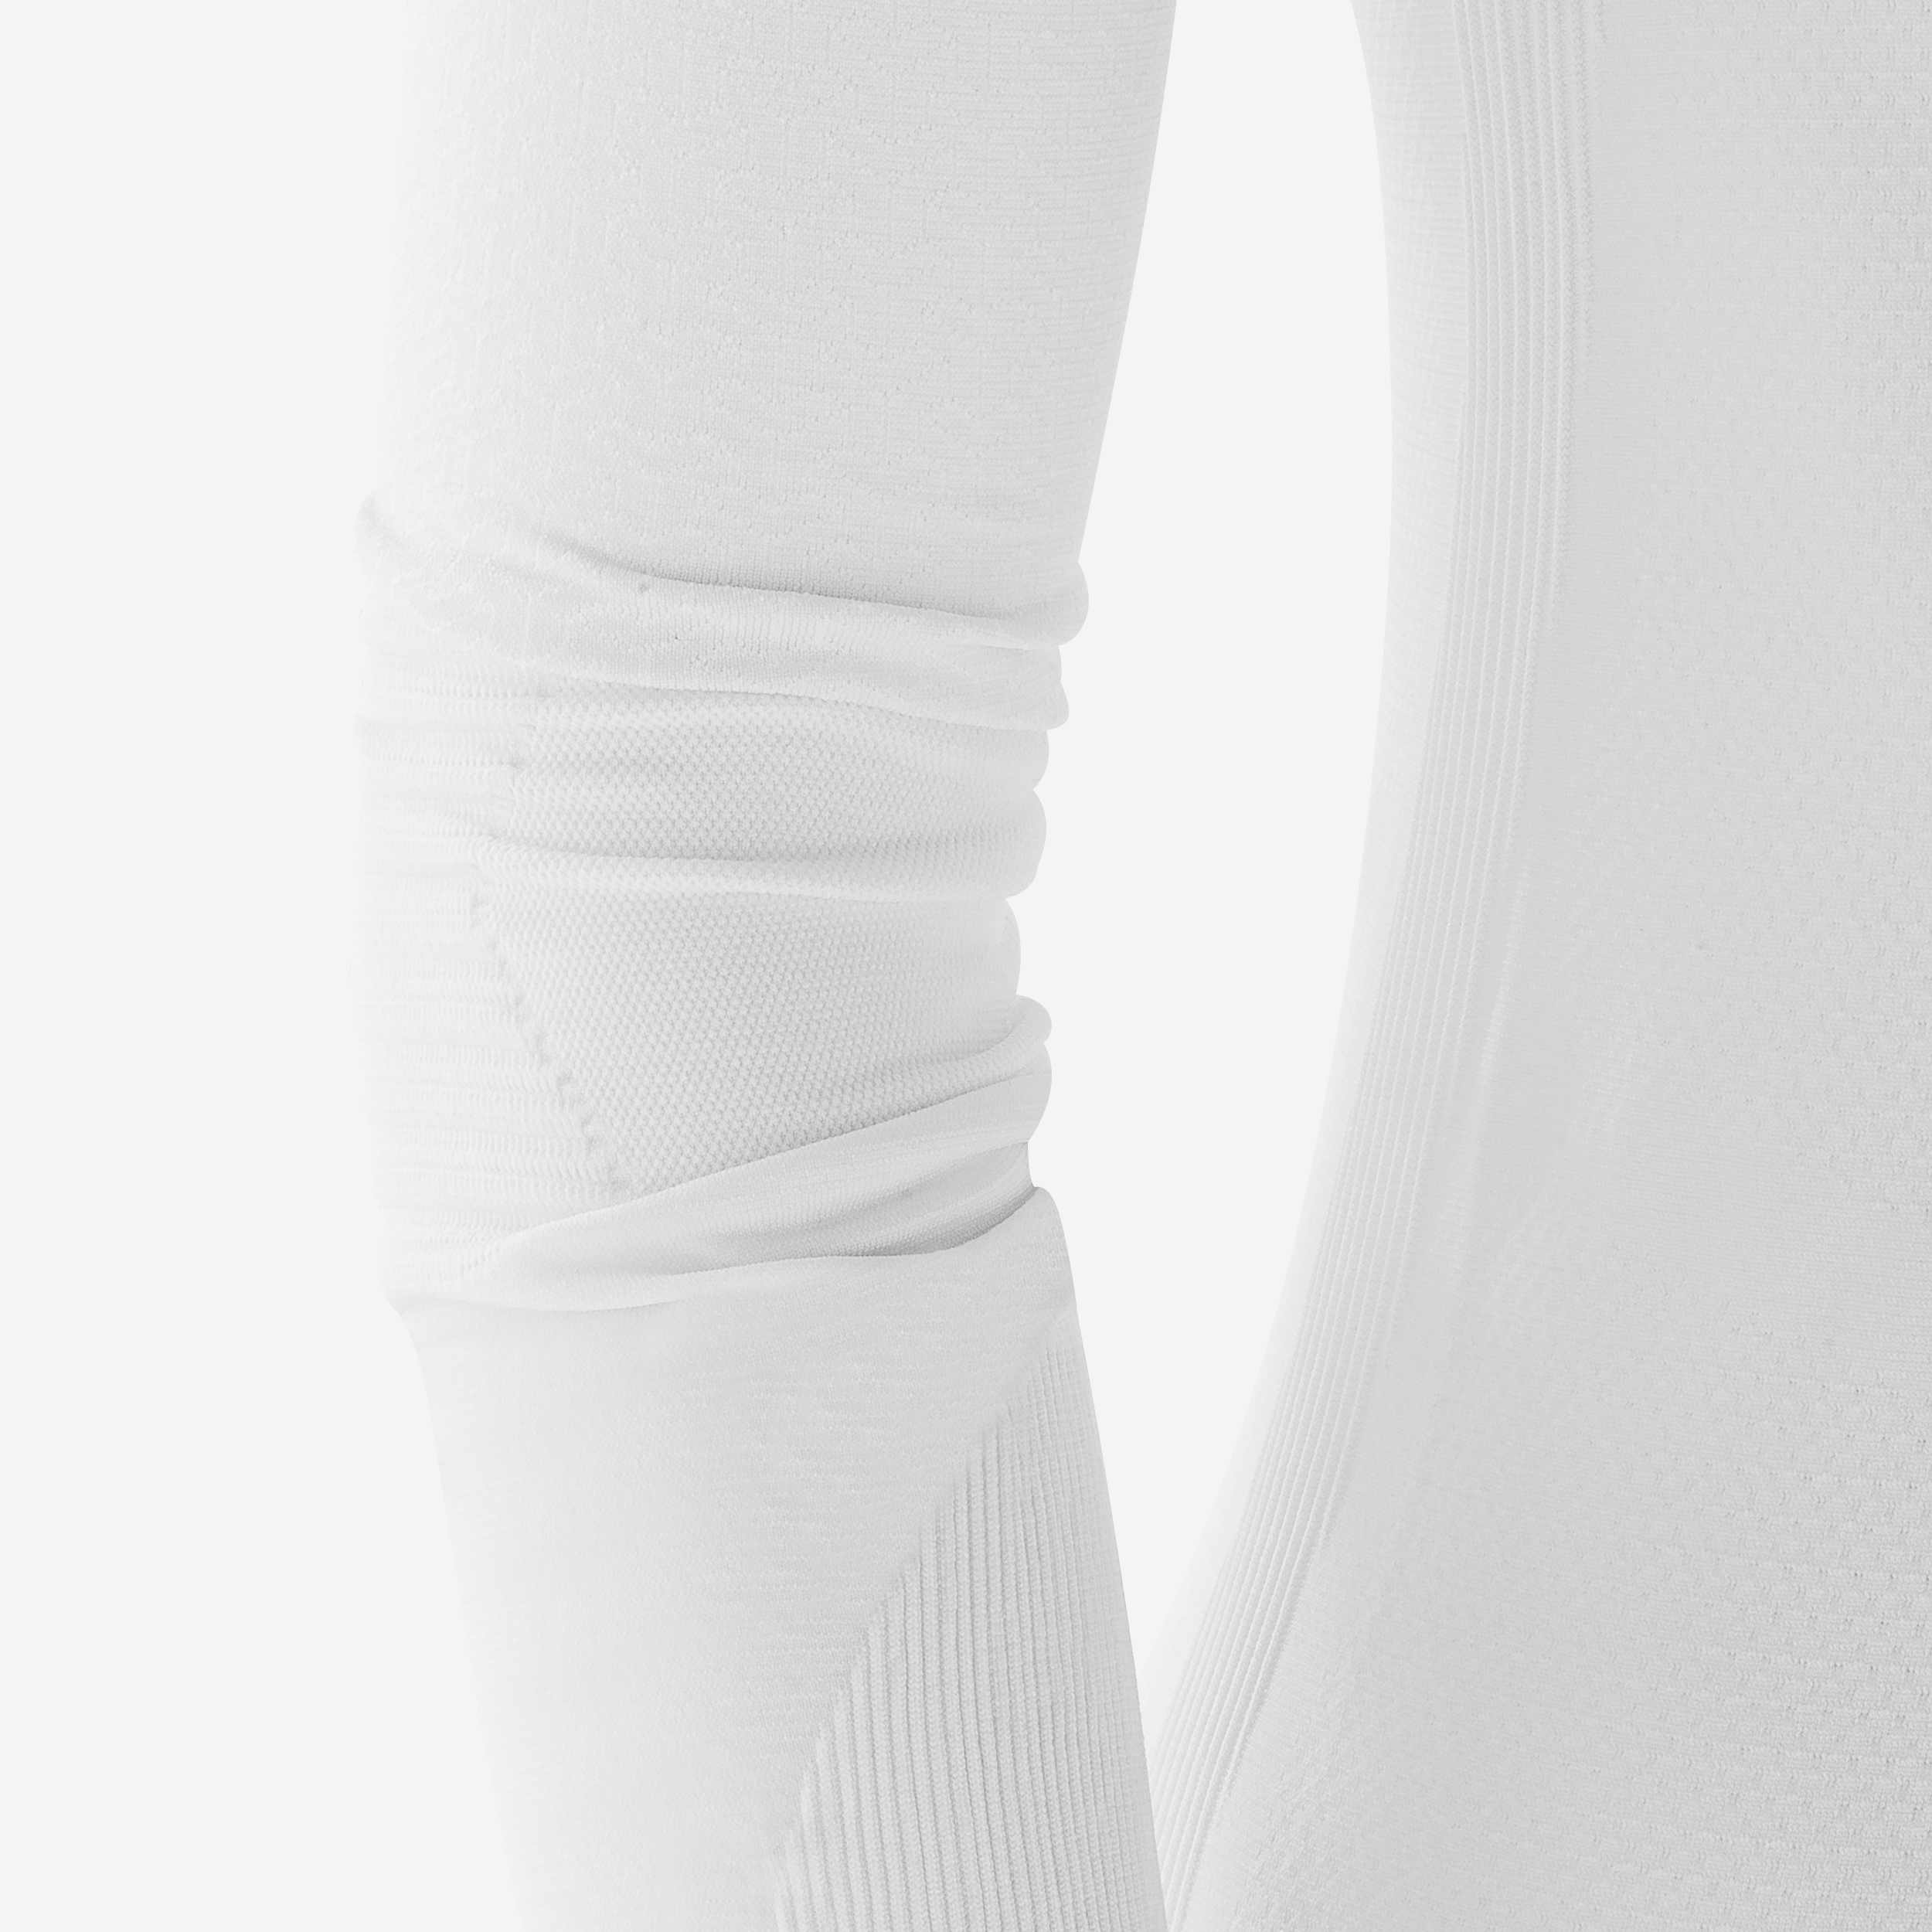 Sous-Vêtements Thermique Homme  Kipsta Sous-vêtement Keepdry 500 adulte  manches longues blanc Blanc Glacier — Dufur